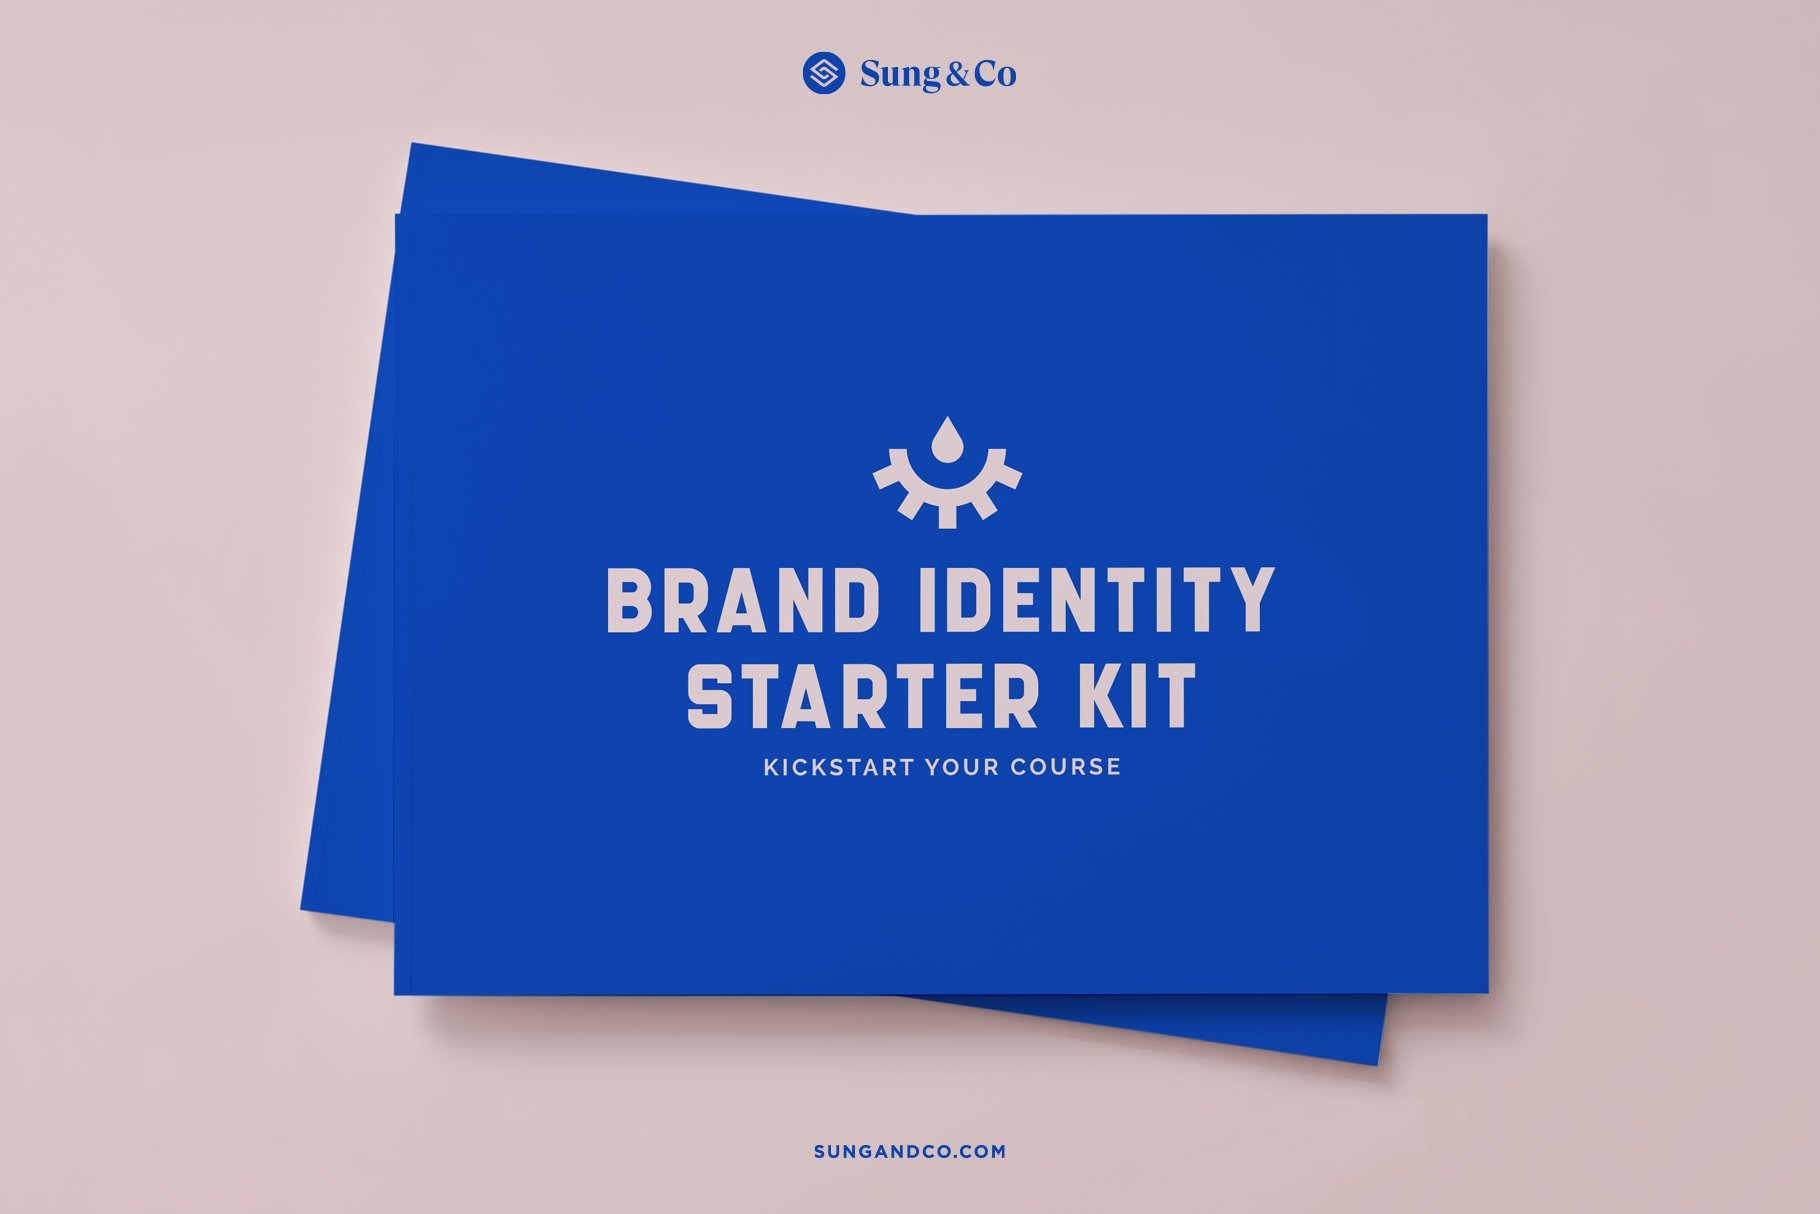 Brand Identity Starter Kit cover image.